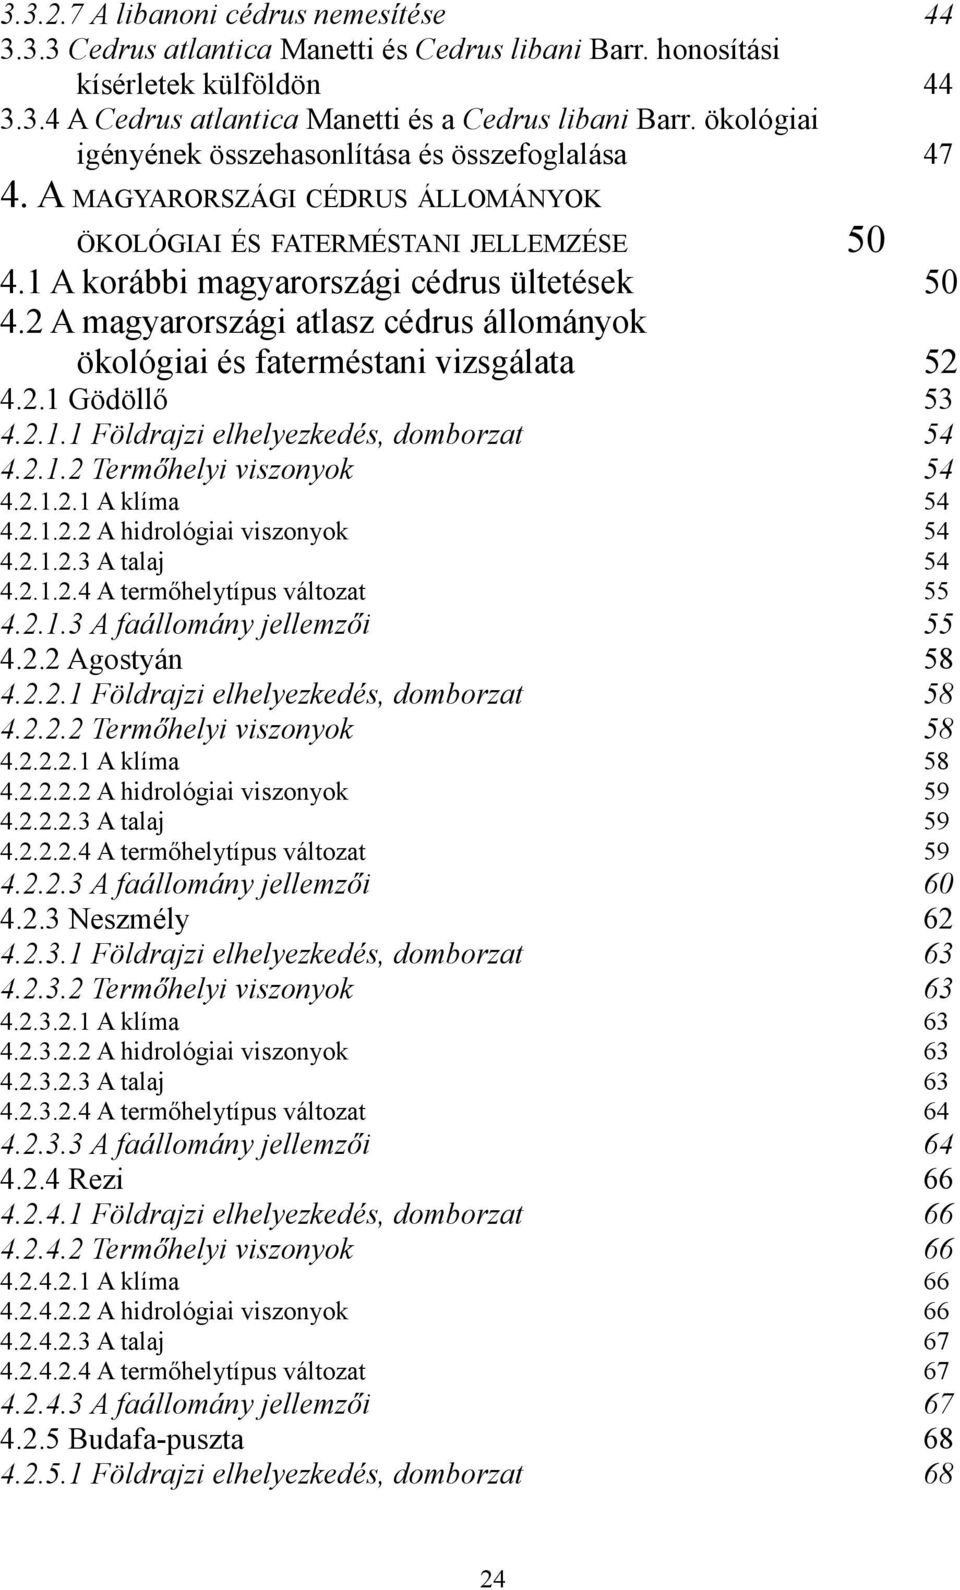 2 A magyarországi atlasz cédrus állományok ökológiai és faterméstani vizsgálata 52 4.2.1 Gödöllő 53 4.2.1.1 Földrajzi elhelyezkedés, domborzat 54 4.2.1.2 Termőhelyi viszonyok 54 4.2.1.2.1 A klíma 54 4.